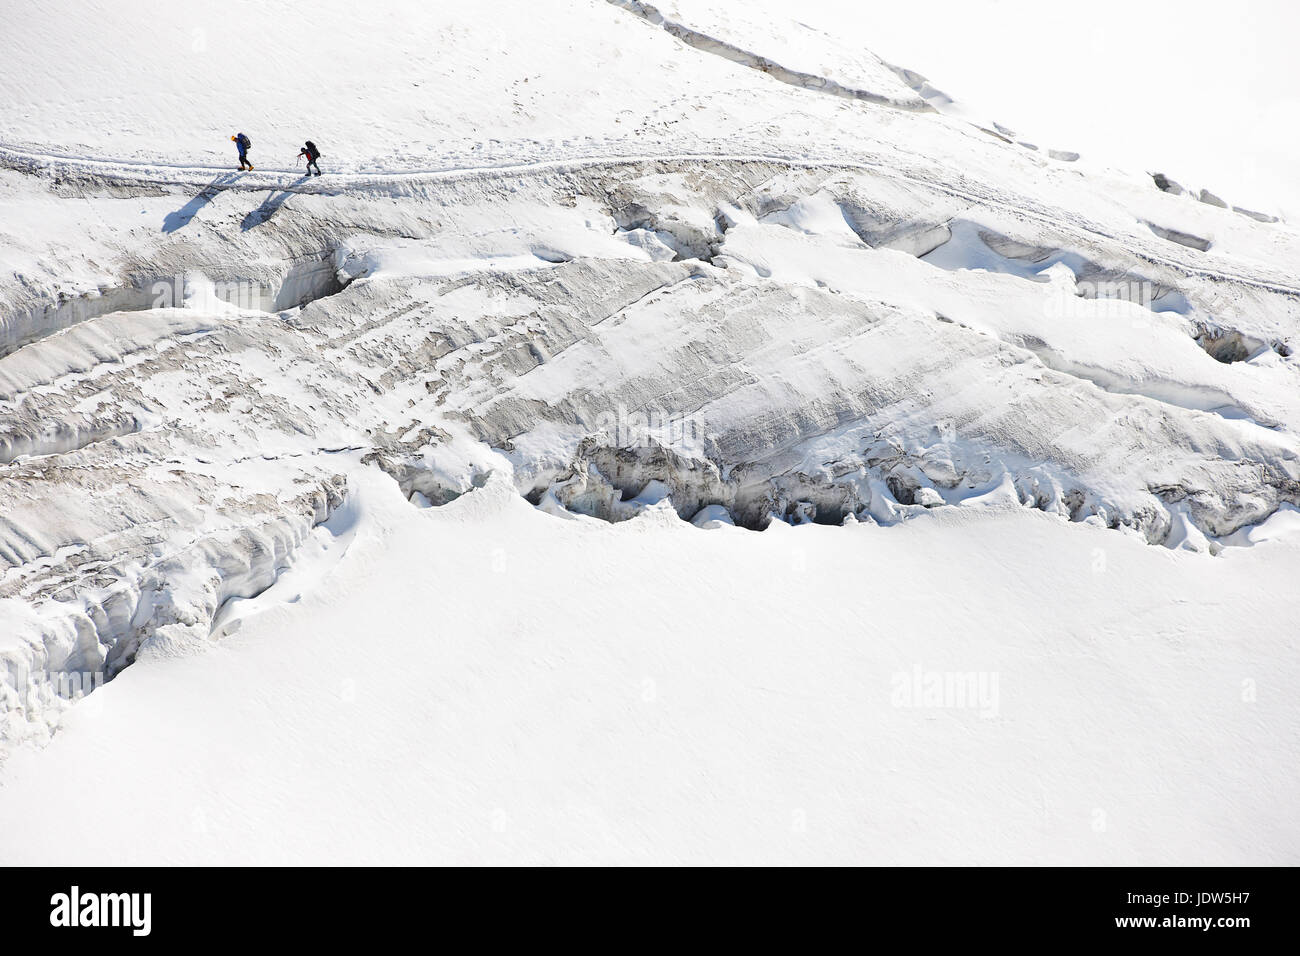 Los montañistas atravesar nieve profunda, ángulo alto Foto de stock